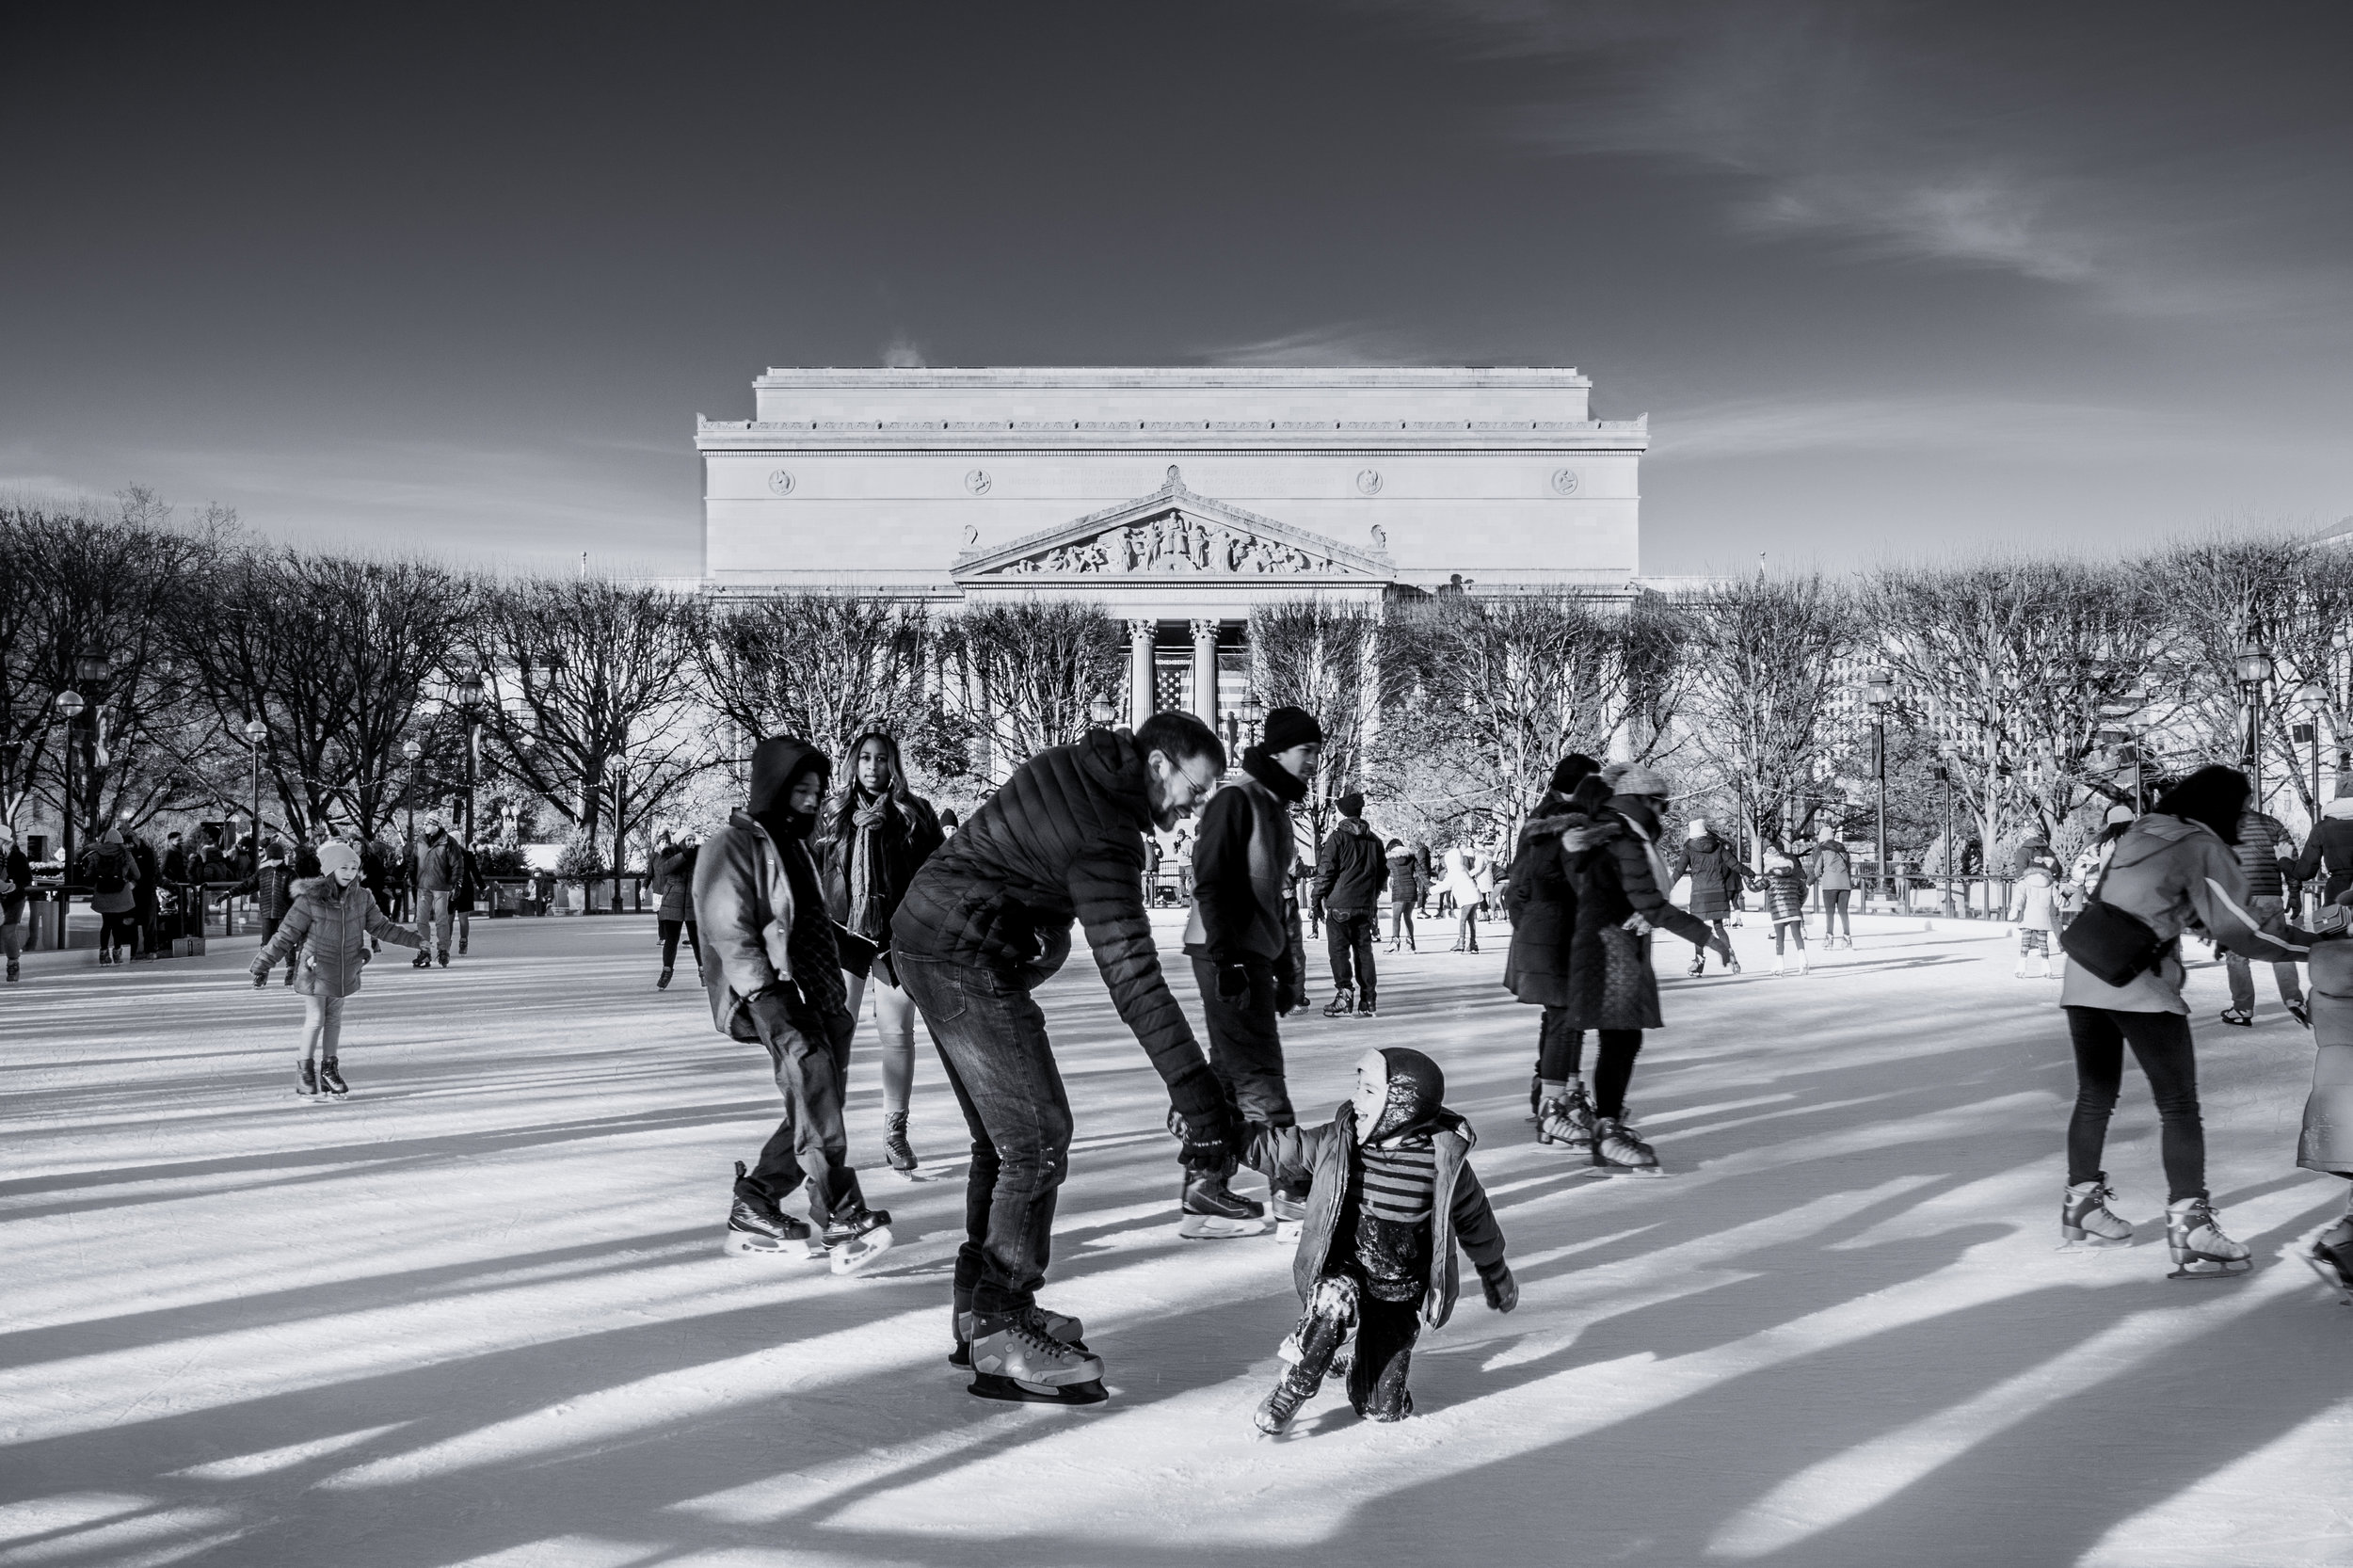 Skating Lesson. Washington, D.C. (Jan. 2018)